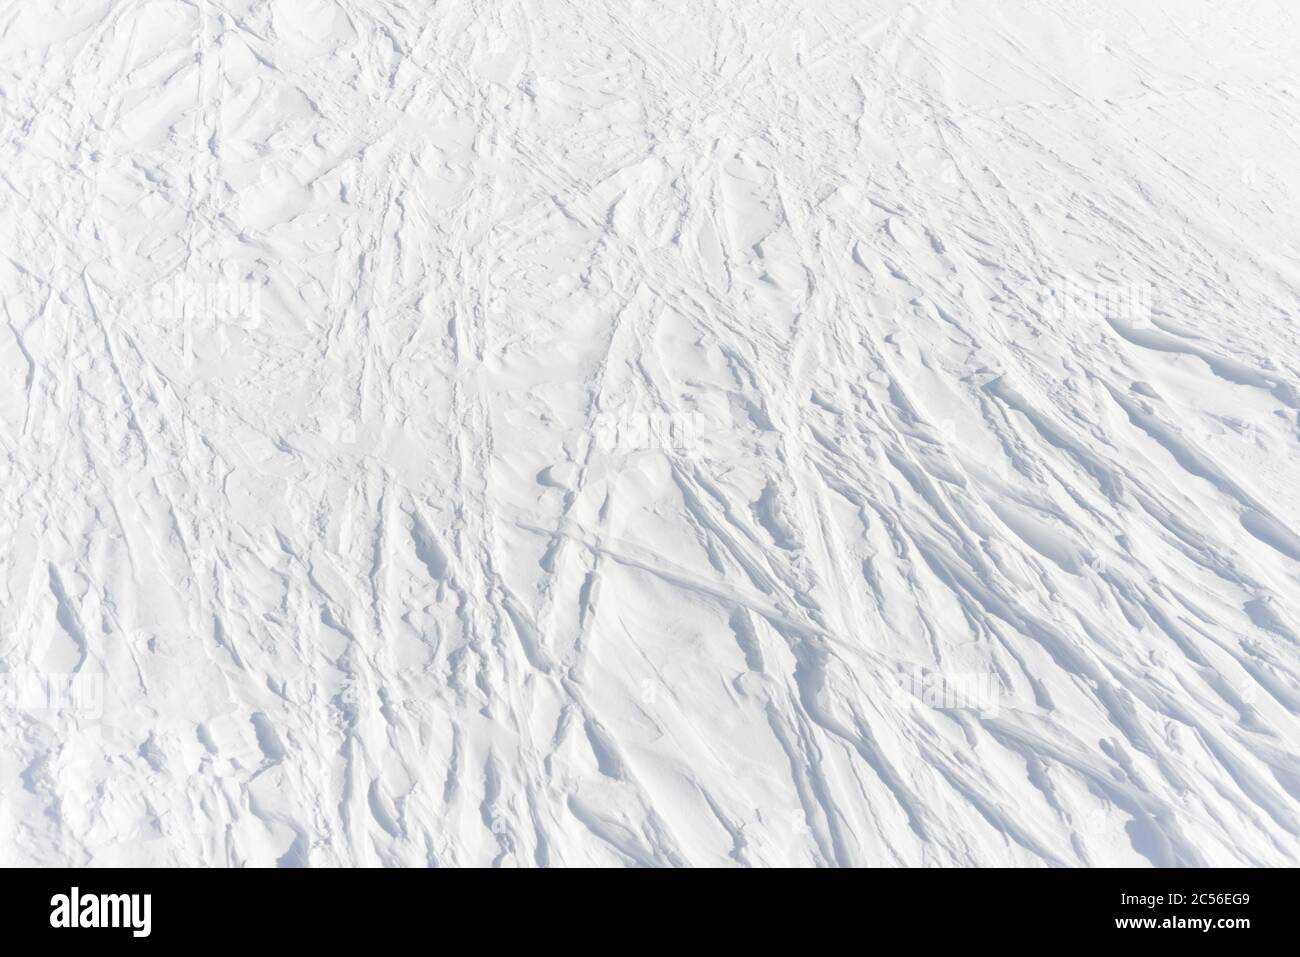 3 - les pistes linéaires légèrement courbés laissées par les skieurs absents se croisent dans un motif en treillis complexe dans la neige alpine blanche pure, texture d'arrière-plan Banque D'Images